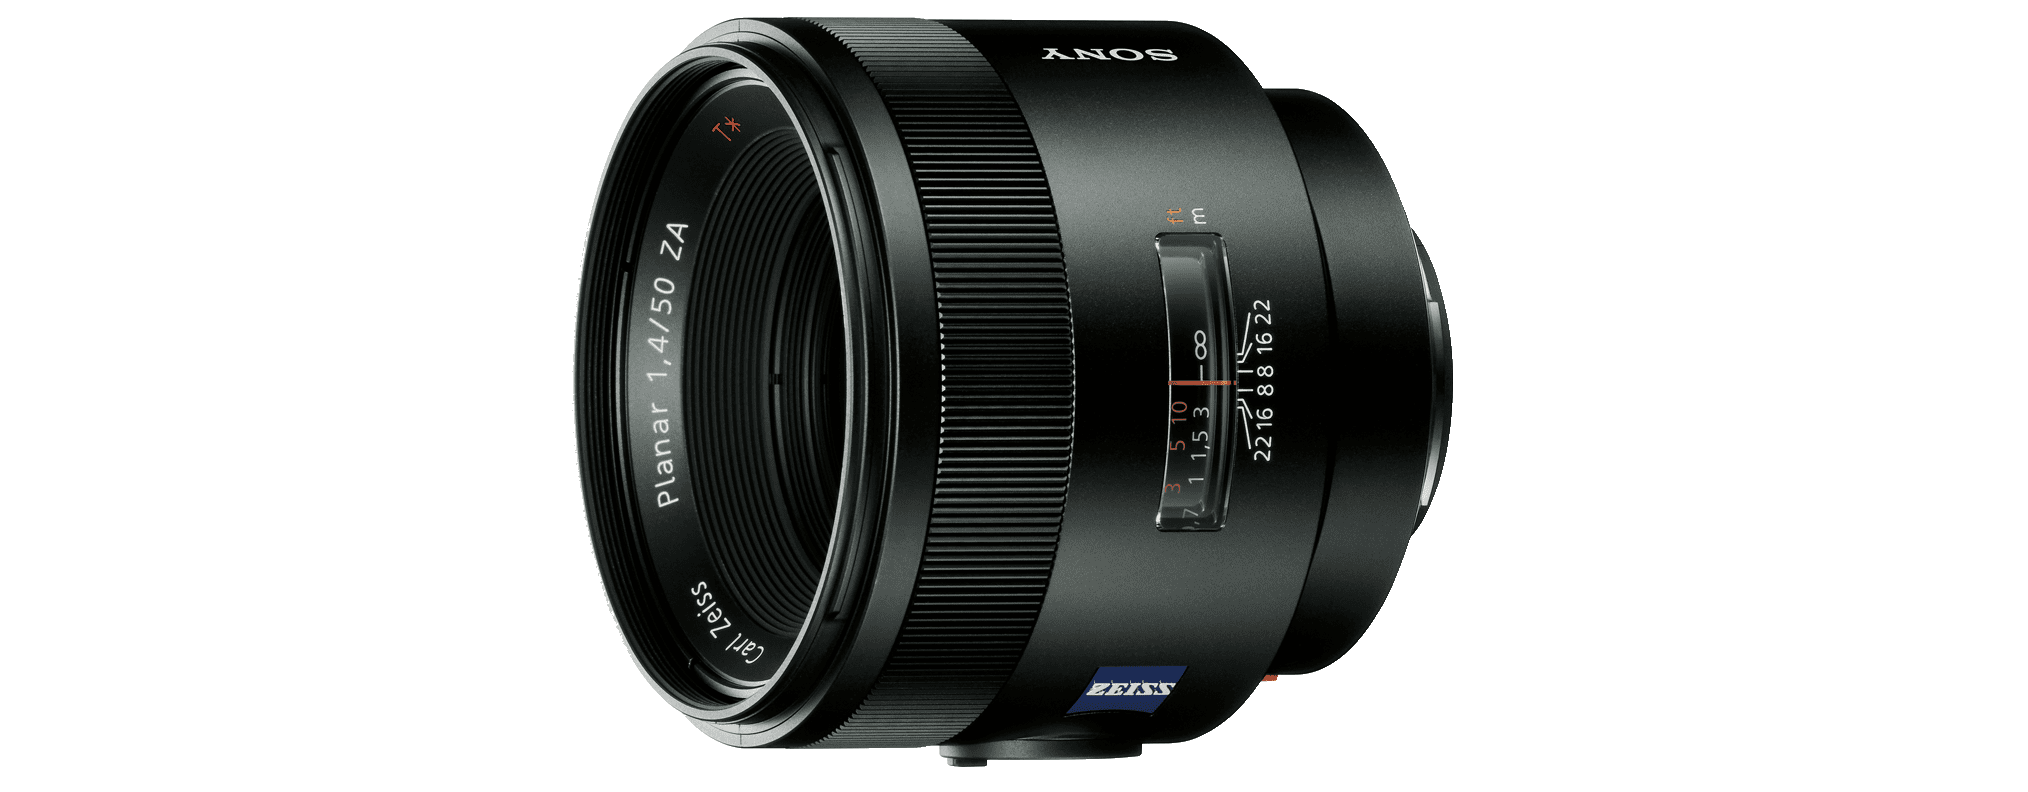 SAL50F14Z Planar T* 50mm F1.4 ZA SSM Prime Lens